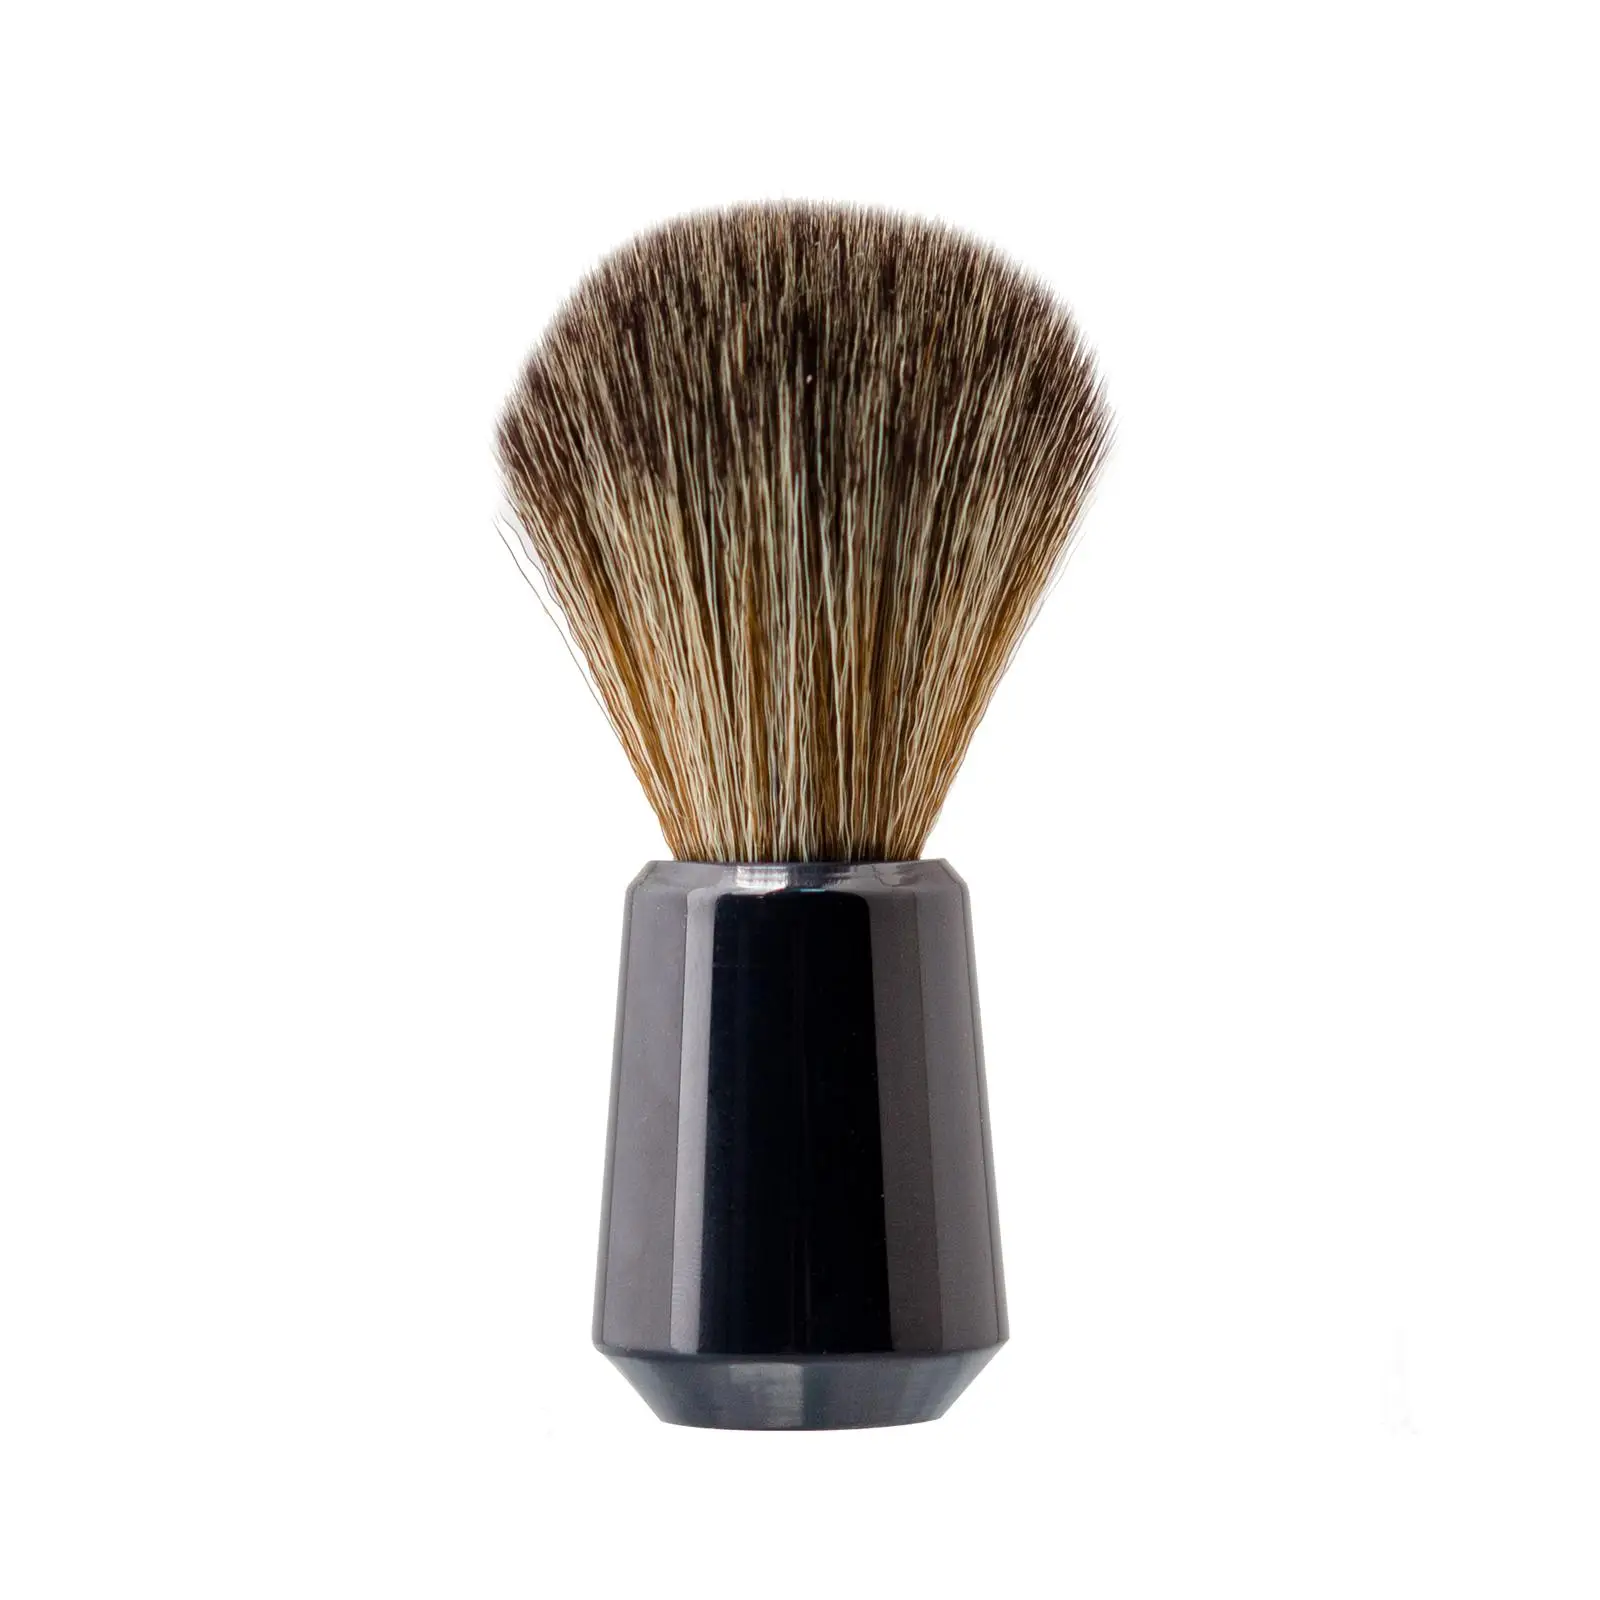 Beard Shaving Brush Portable Easy Foaming for Wet Shave Accessories Lightweight Nylon Bristles for Barbershop Travel Hair Salon